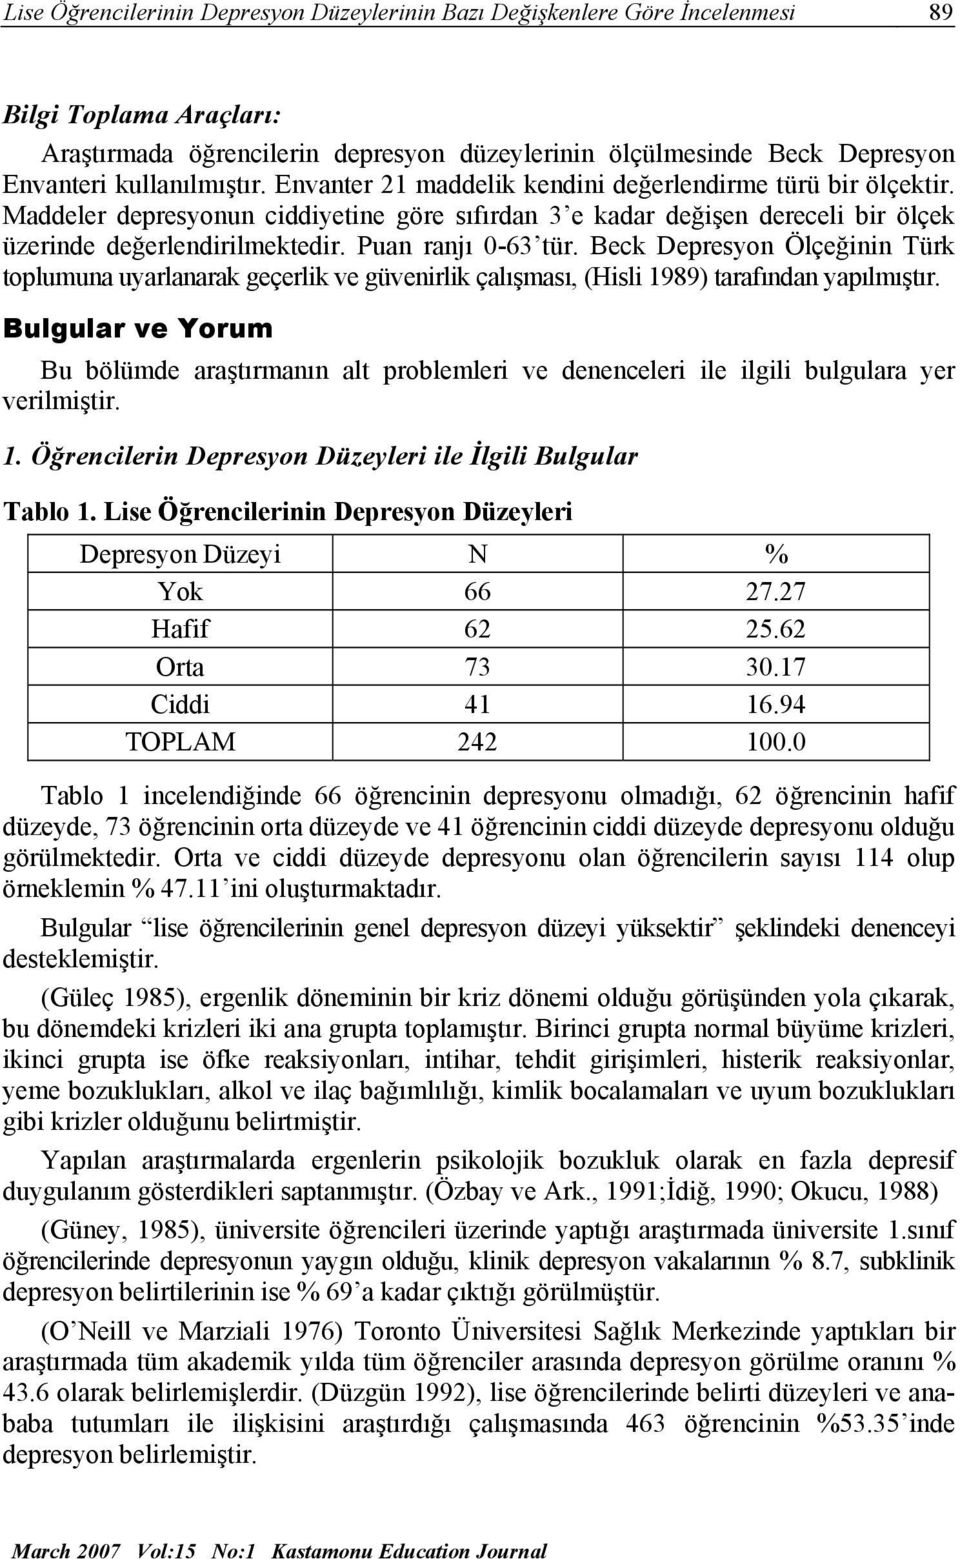 Puan ranjı 0-63 tür. Beck Depresyon Ölçeğinin Türk toplumuna uyarlanarak geçerlik ve güvenirlik çalışması, (Hisli 1989) tarafından yapılmıştır.